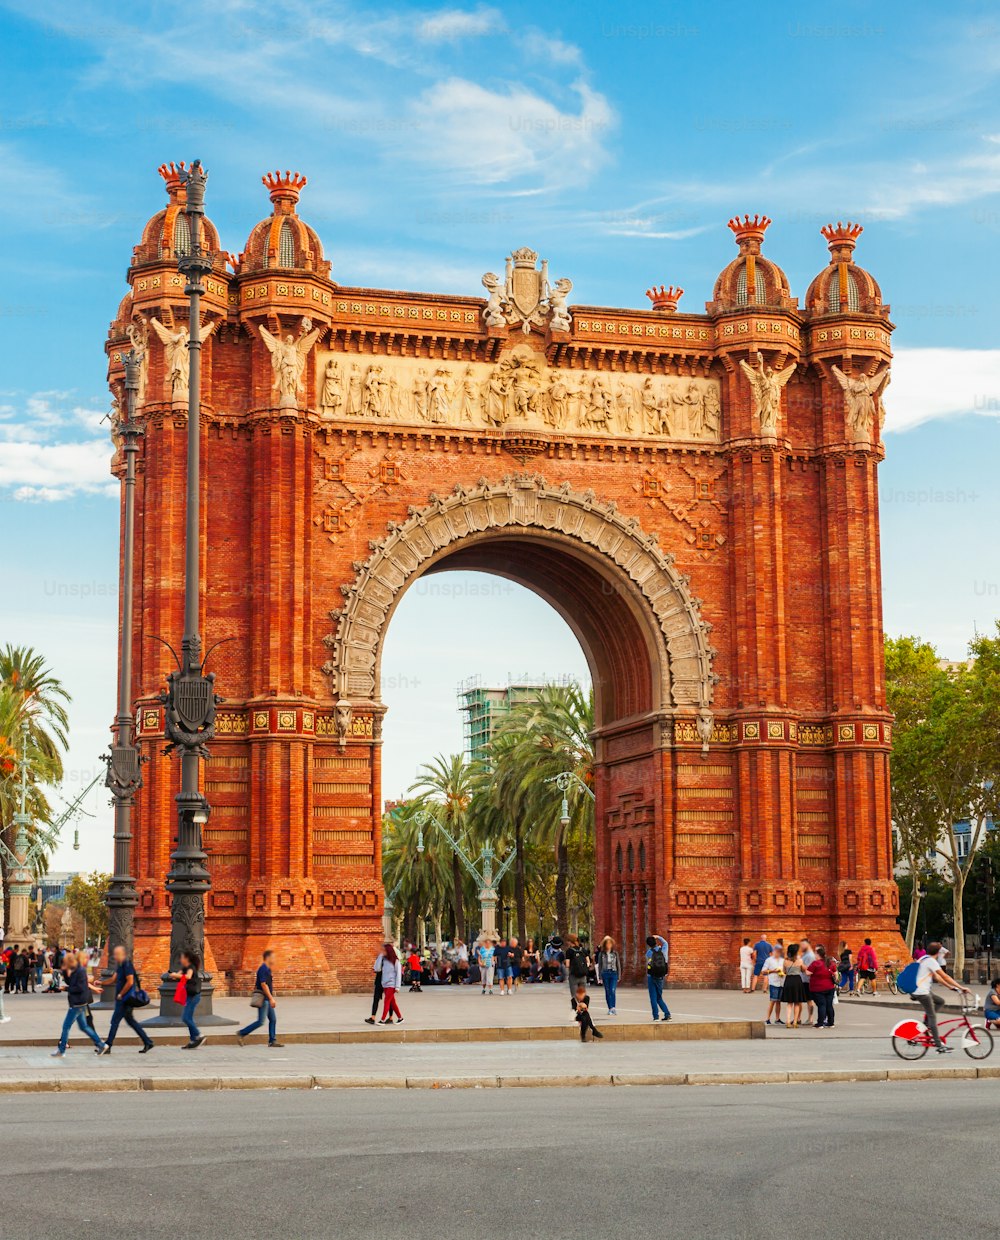 L’Arc de Triomphe ou Arco de Triunfo est un arc de triomphe situé dans la ville de Barcelone, dans la région de Catalogne, en Espagne